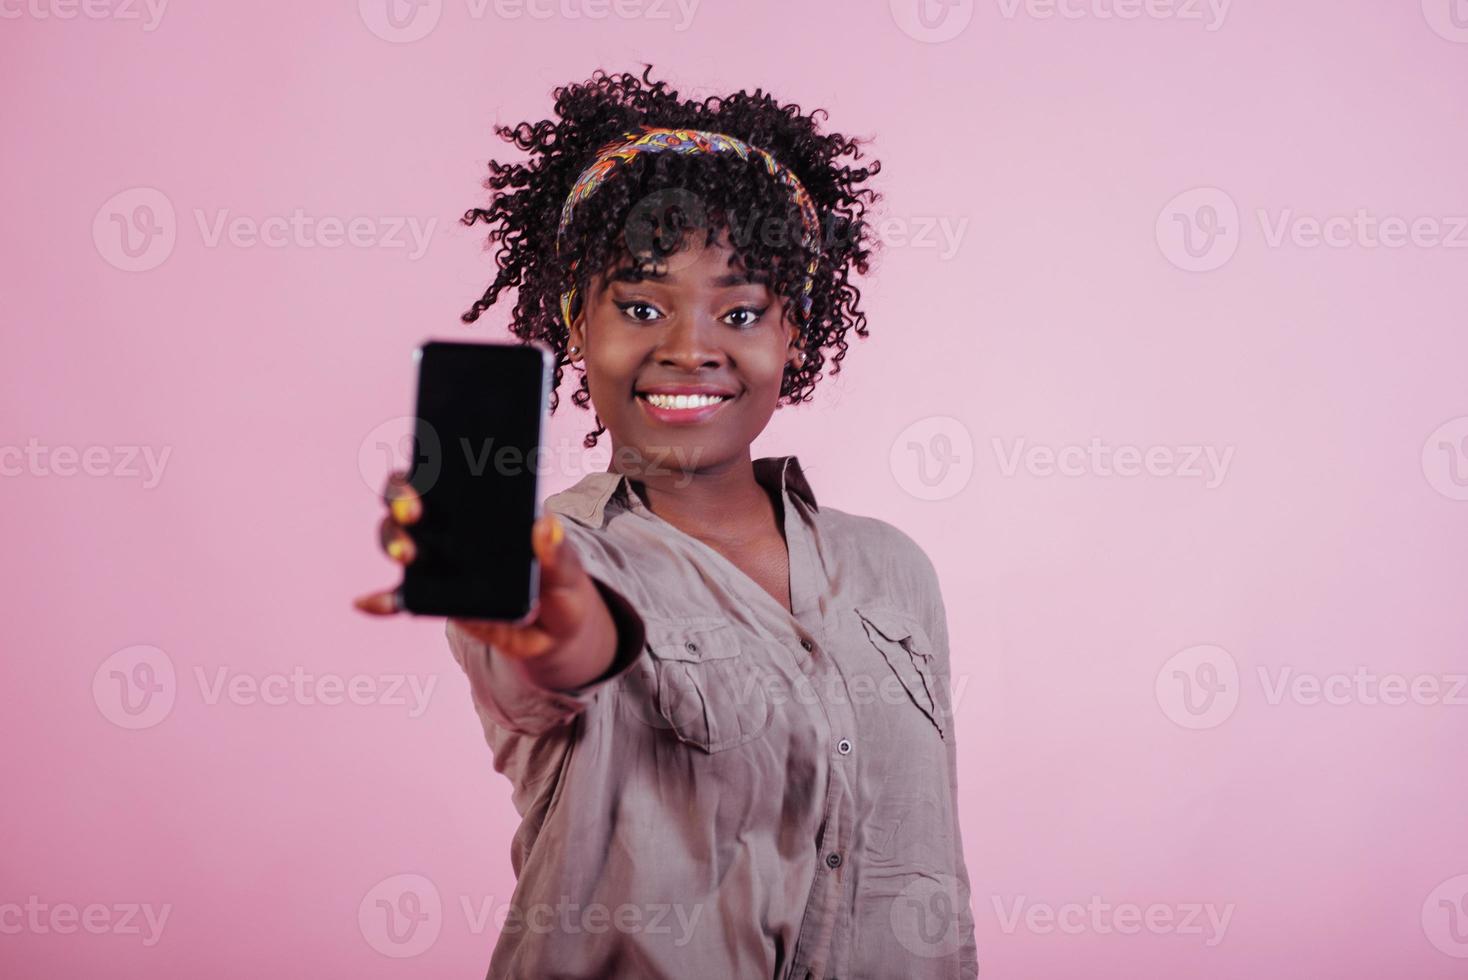 schwarzes telefon in der hand halten. attraktive afroamerikanische frau in lässiger kleidung auf rosa hintergrund im studio foto